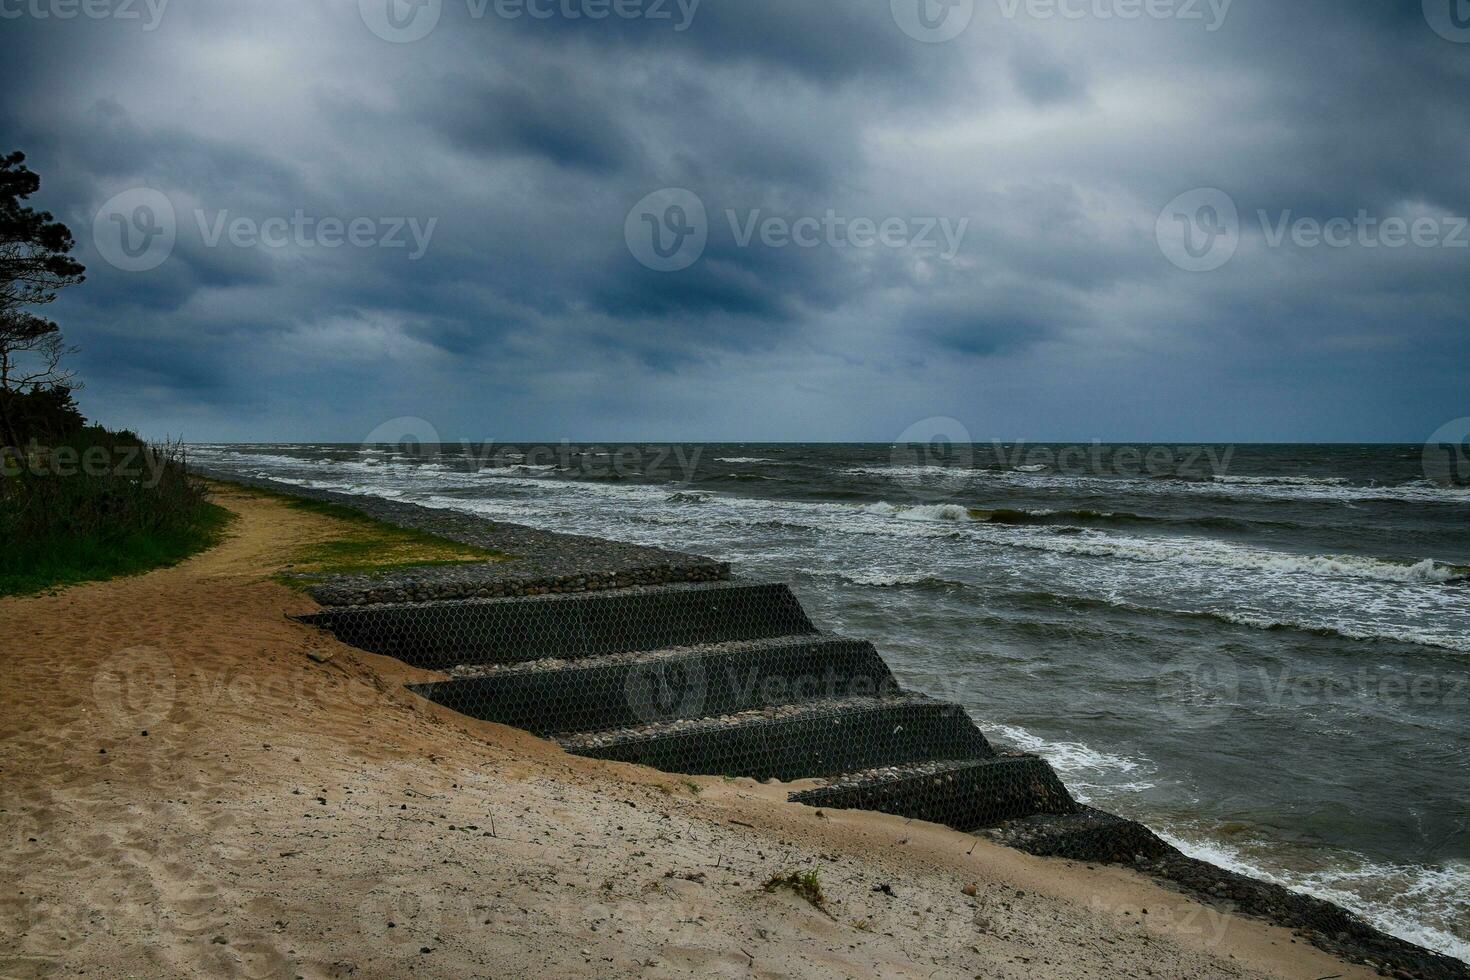 baltic kust landskap på en kall blåsigt vår dag foto